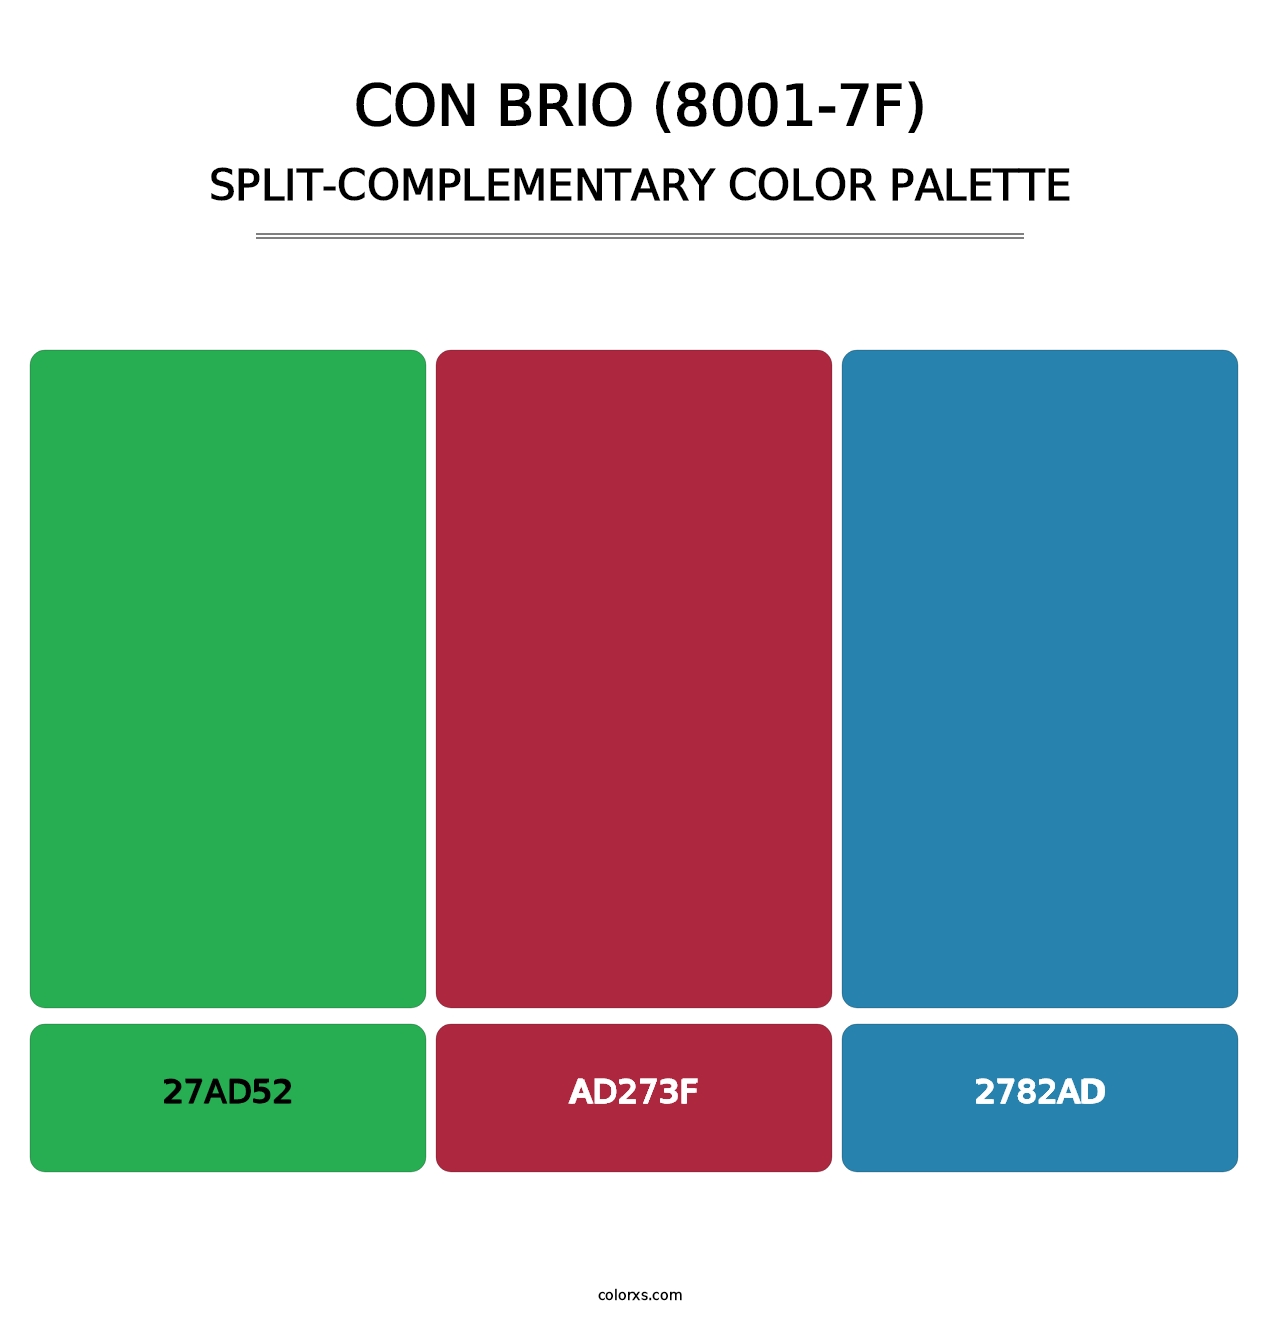 Con Brio (8001-7F) - Split-Complementary Color Palette